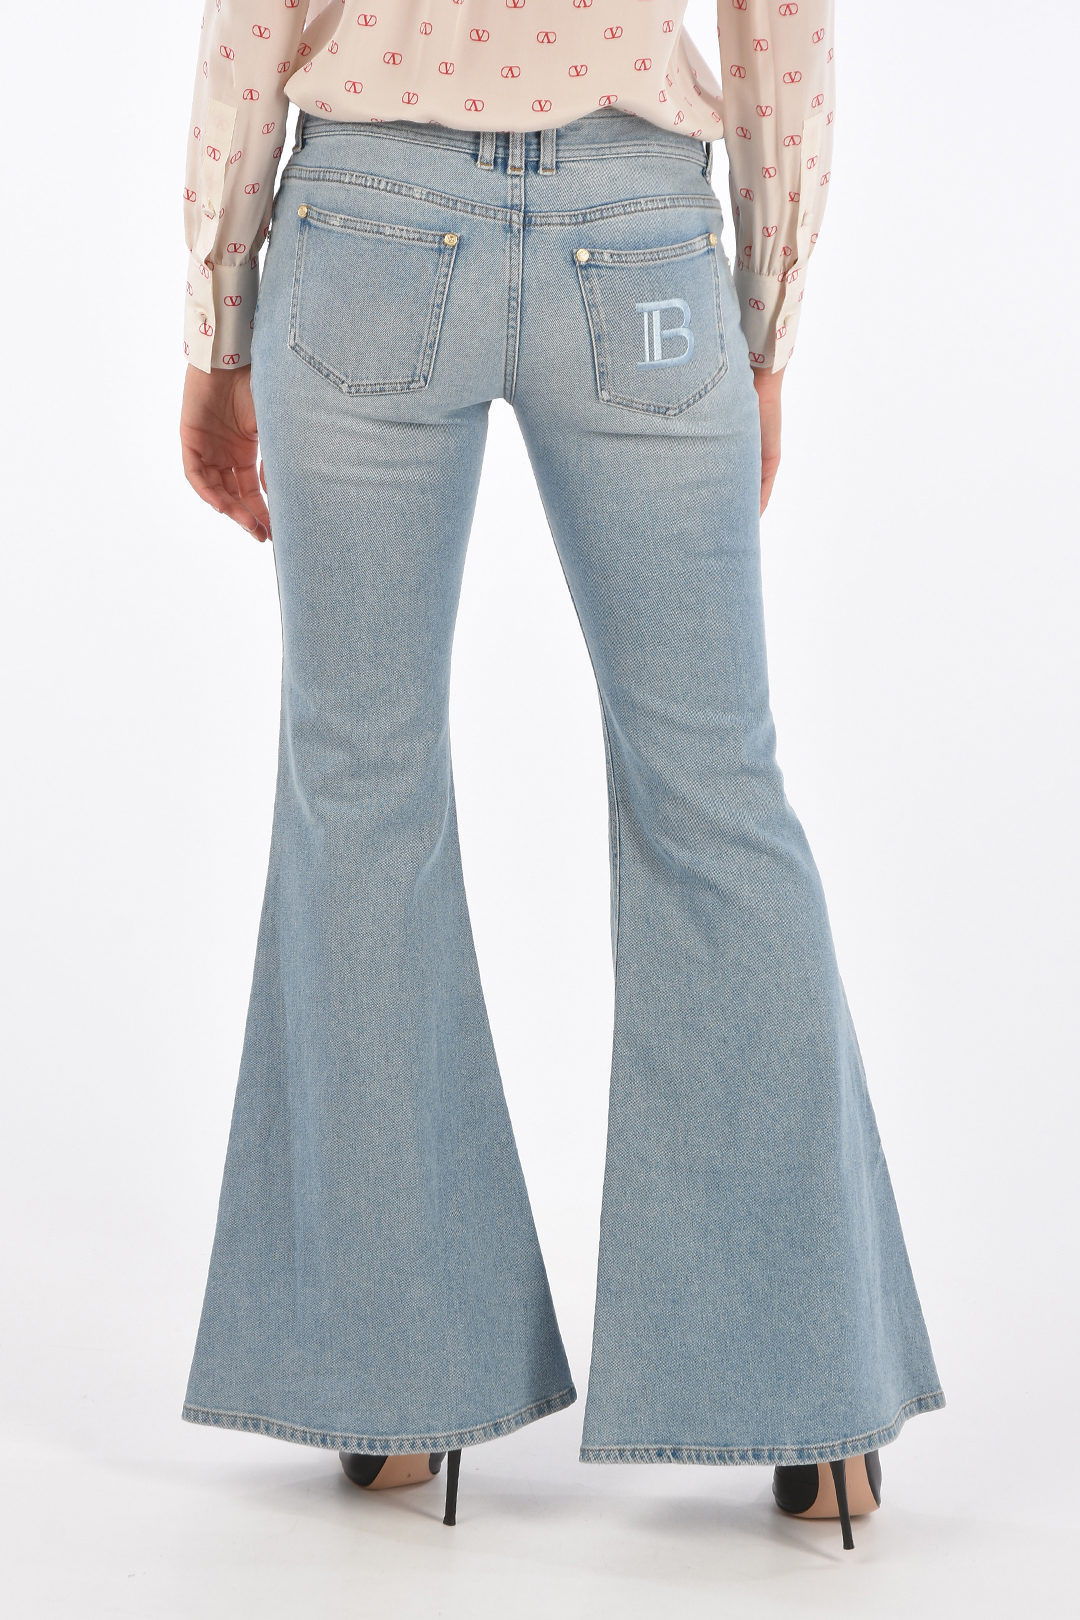 Balmain Low Rise Bootcut Jeans women - Glamood Outlet